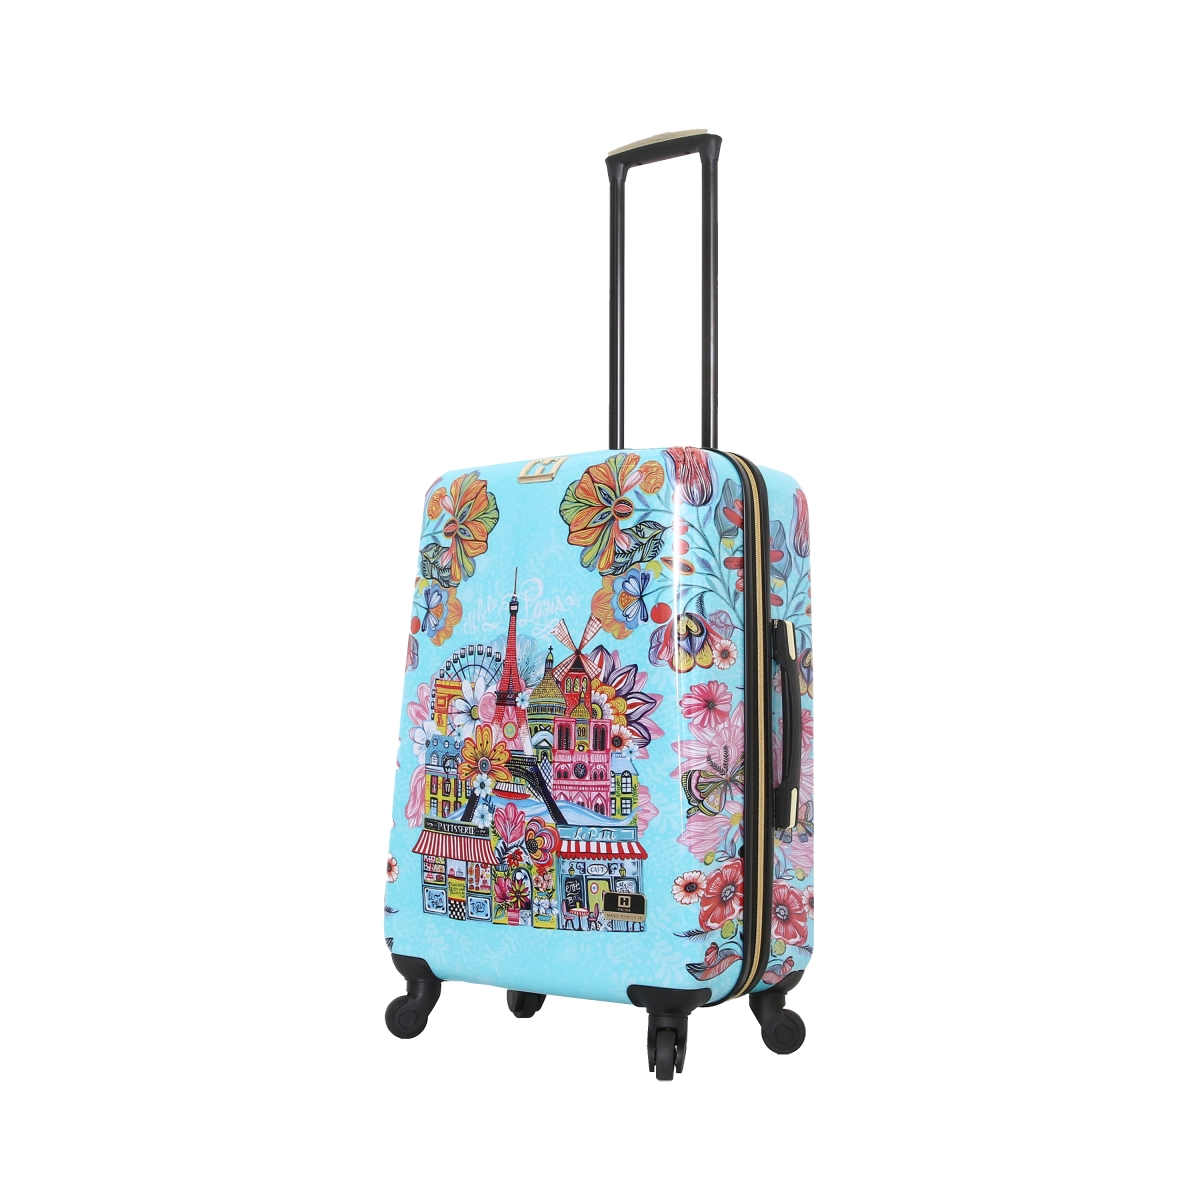 H1004-24-colnn 24 In. Car Pintos Oh La La Floral Cartoon Carry On Luggage, Multicolor